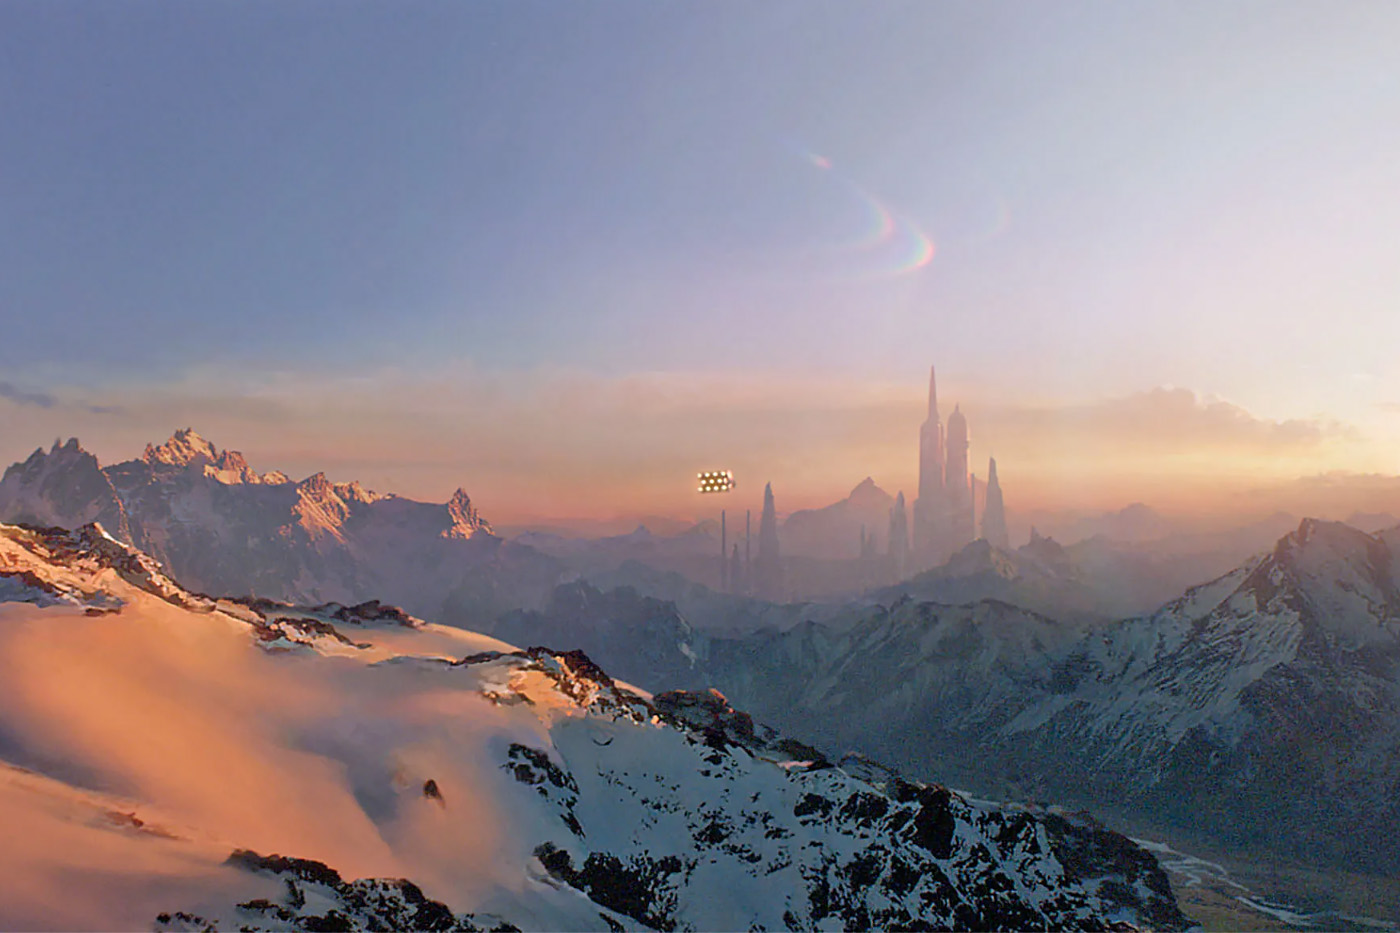 Вершины в регионе курортного города Гриндельвальд были использованы в качестве фона для создания ландшафтов планеты Альдераан в фильме «Звездные войны: Эпизод III — Месть ситхов».